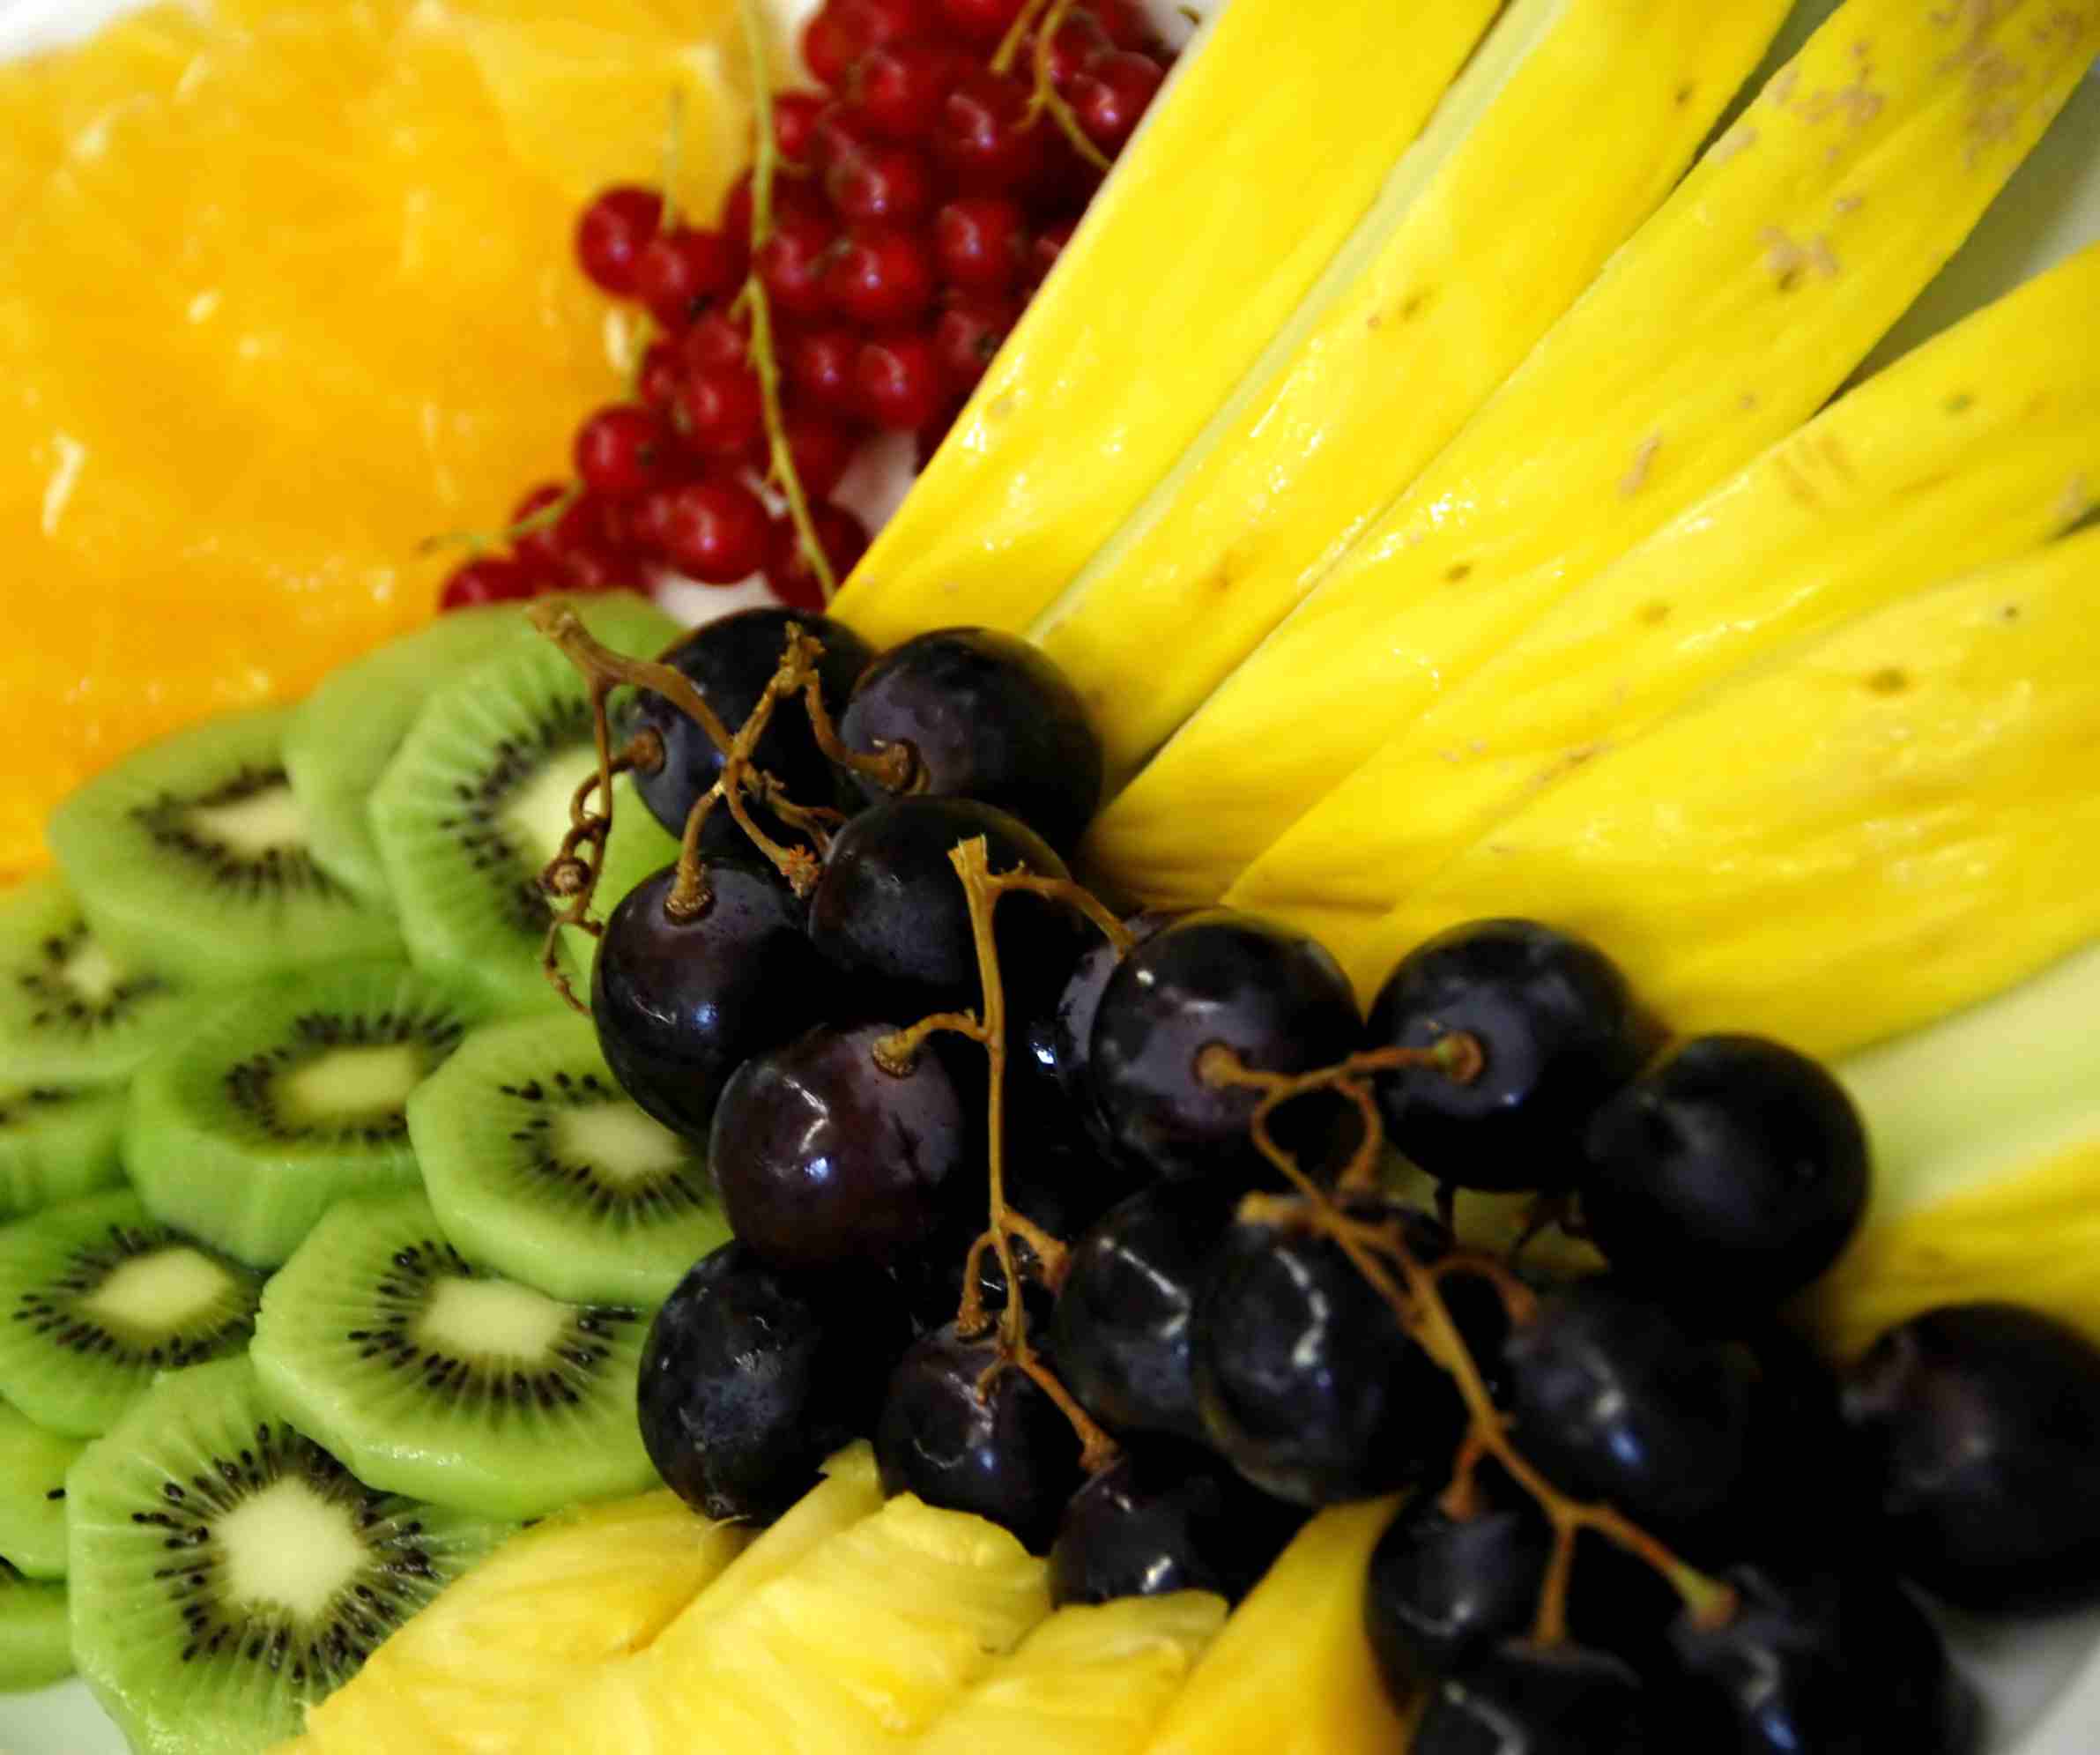 a close up of fruit